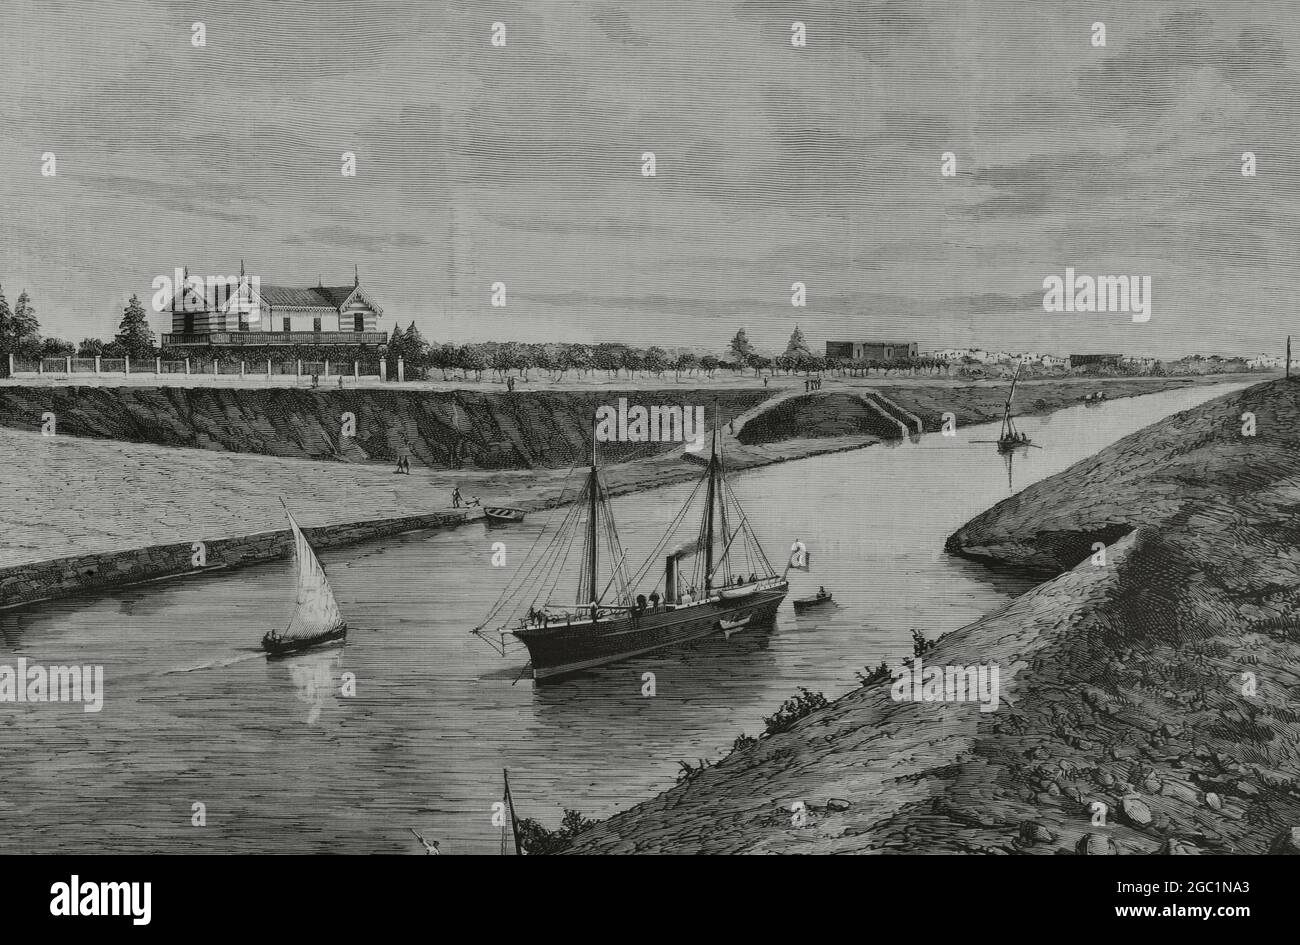 Egypt, Suez Canal. View of Ismailia. Drawing by A. de Caula. Engraving by Rico. La Ilustración Española y Americana, 1882. Stock Photo